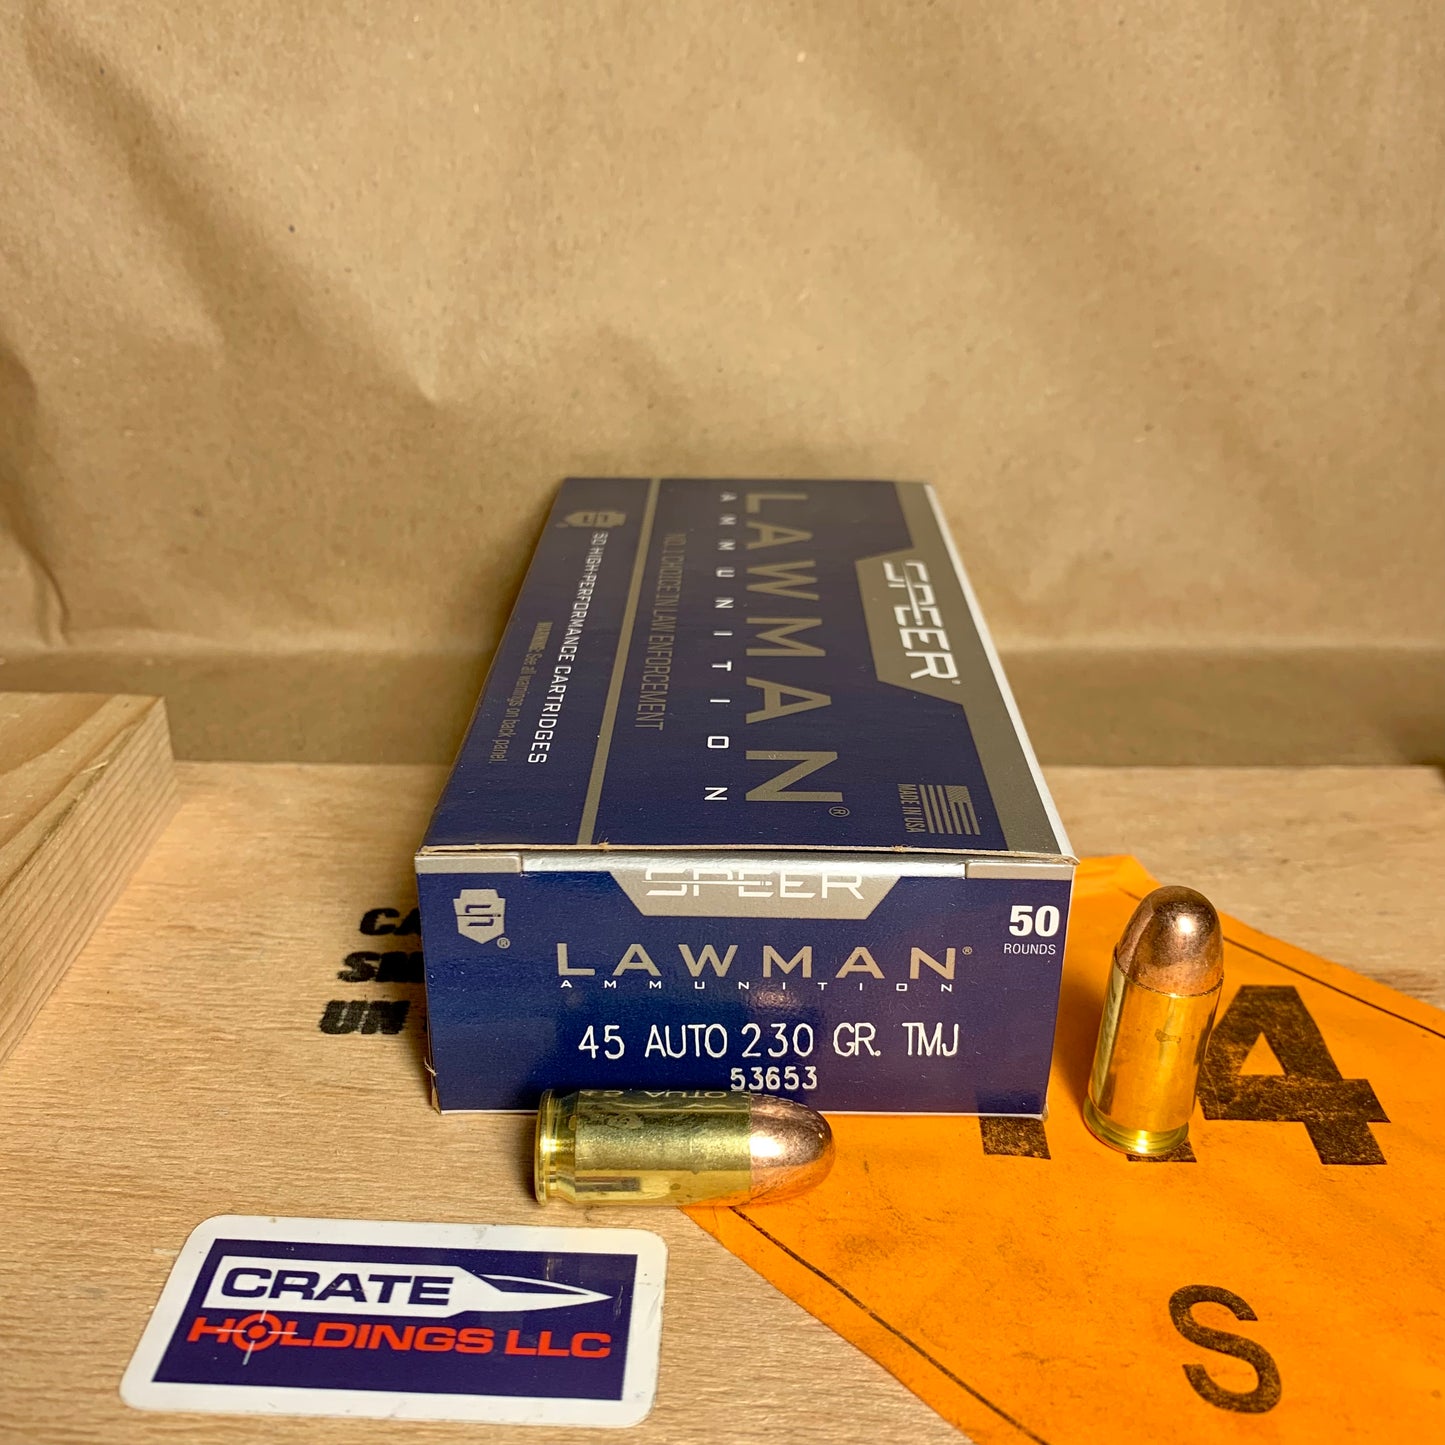 50 Count Box Lawman 45 ACP Auto Ammo 230gr TMJ - 53653